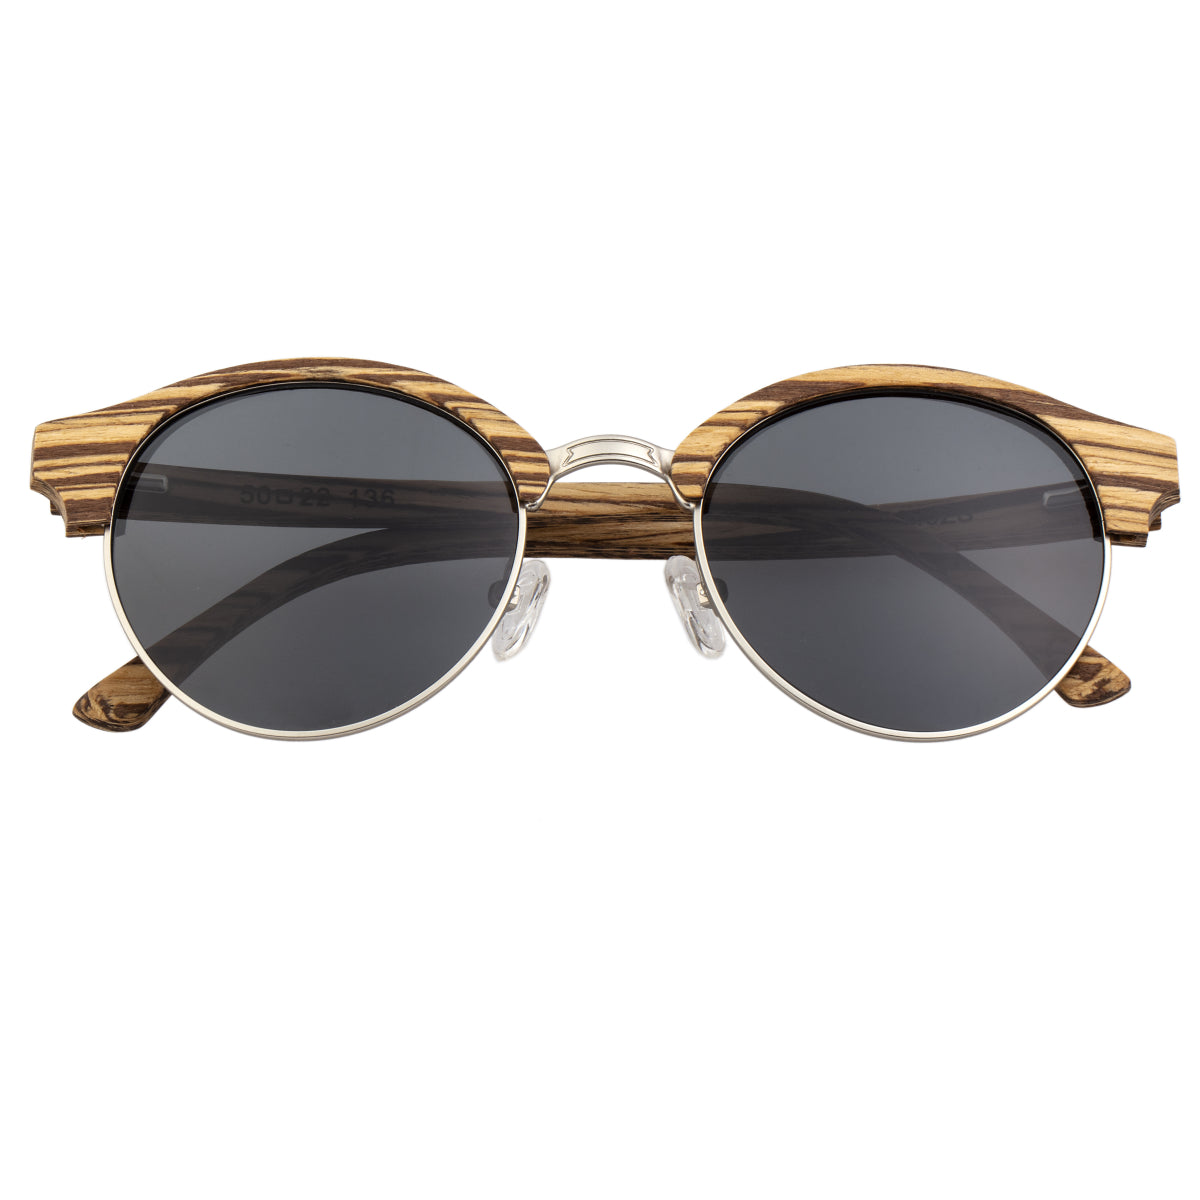 Earth Wood Misty Polarized Sunglasses - Zebrawood/Black  - ESG049ZS